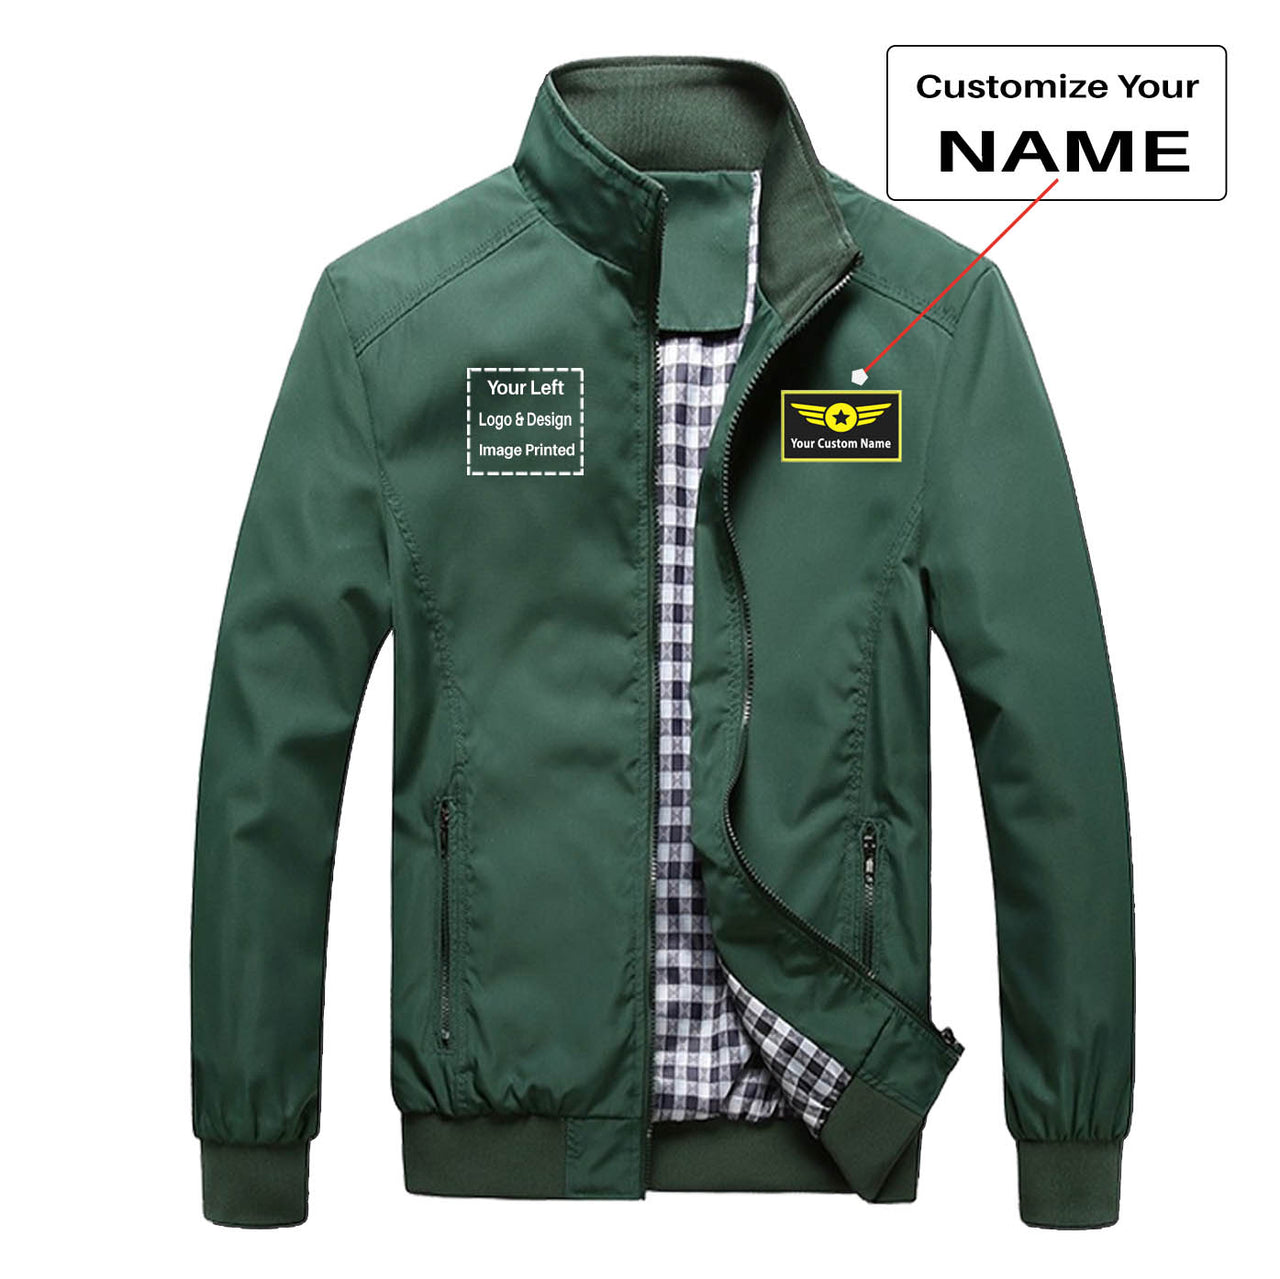 Custom Name & LOGO Designed Stylish Jackets